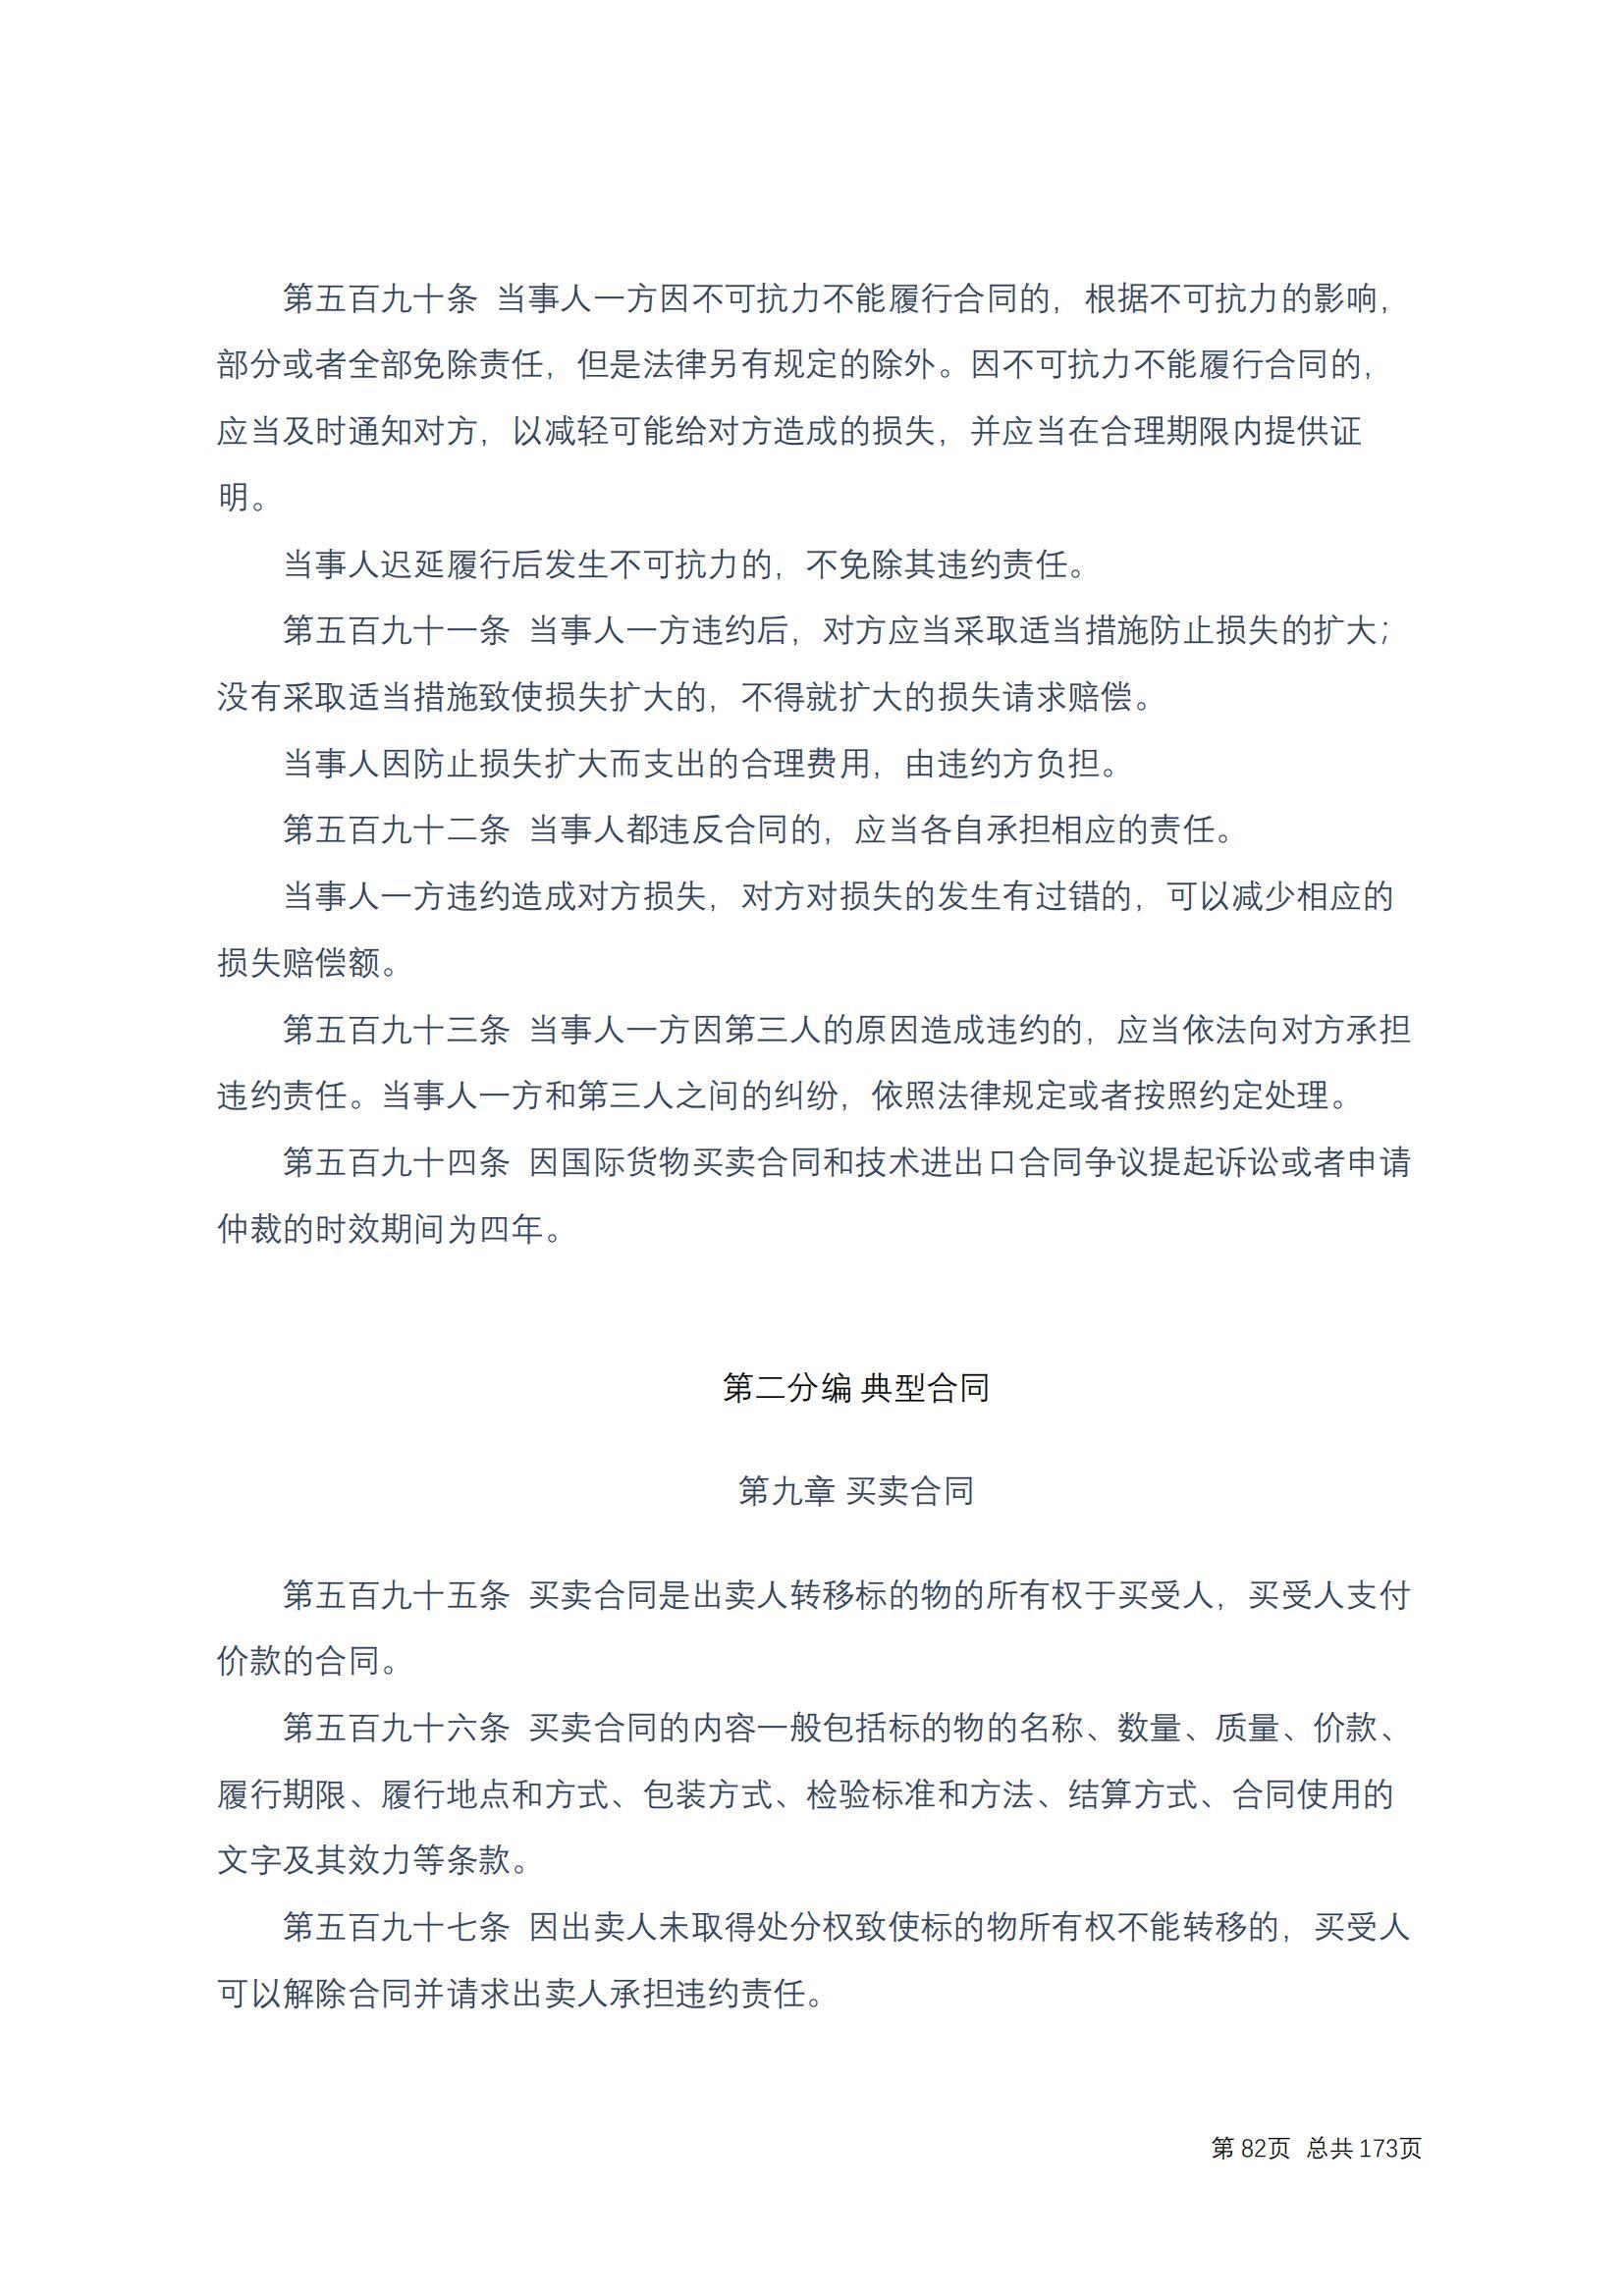 中华人民共和国民法典 修改过_81